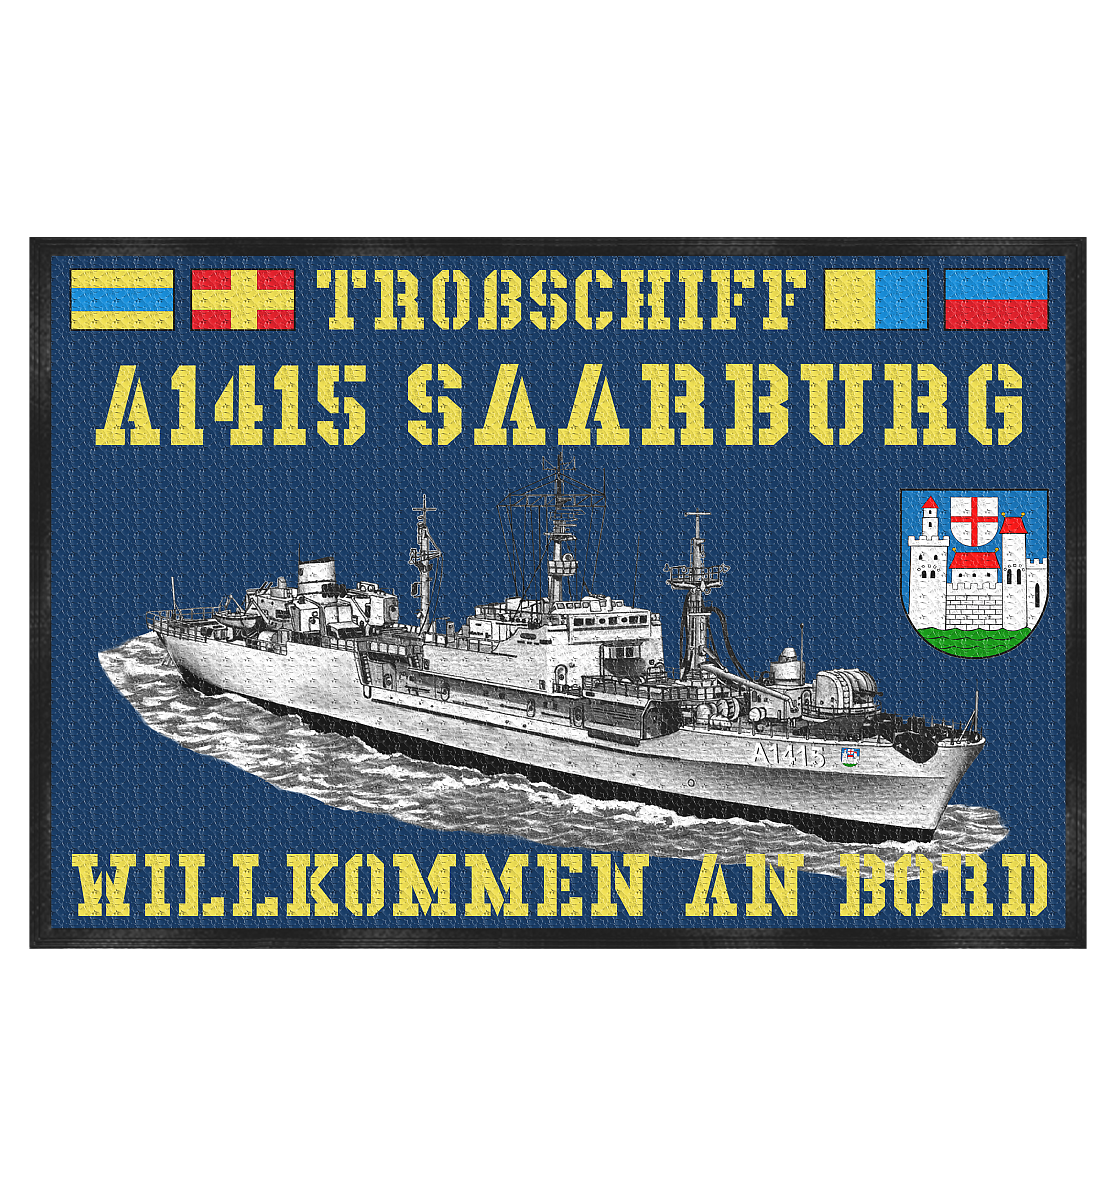 Troßschiff A1415 SAARBURG - Fußmatte 60x40cm